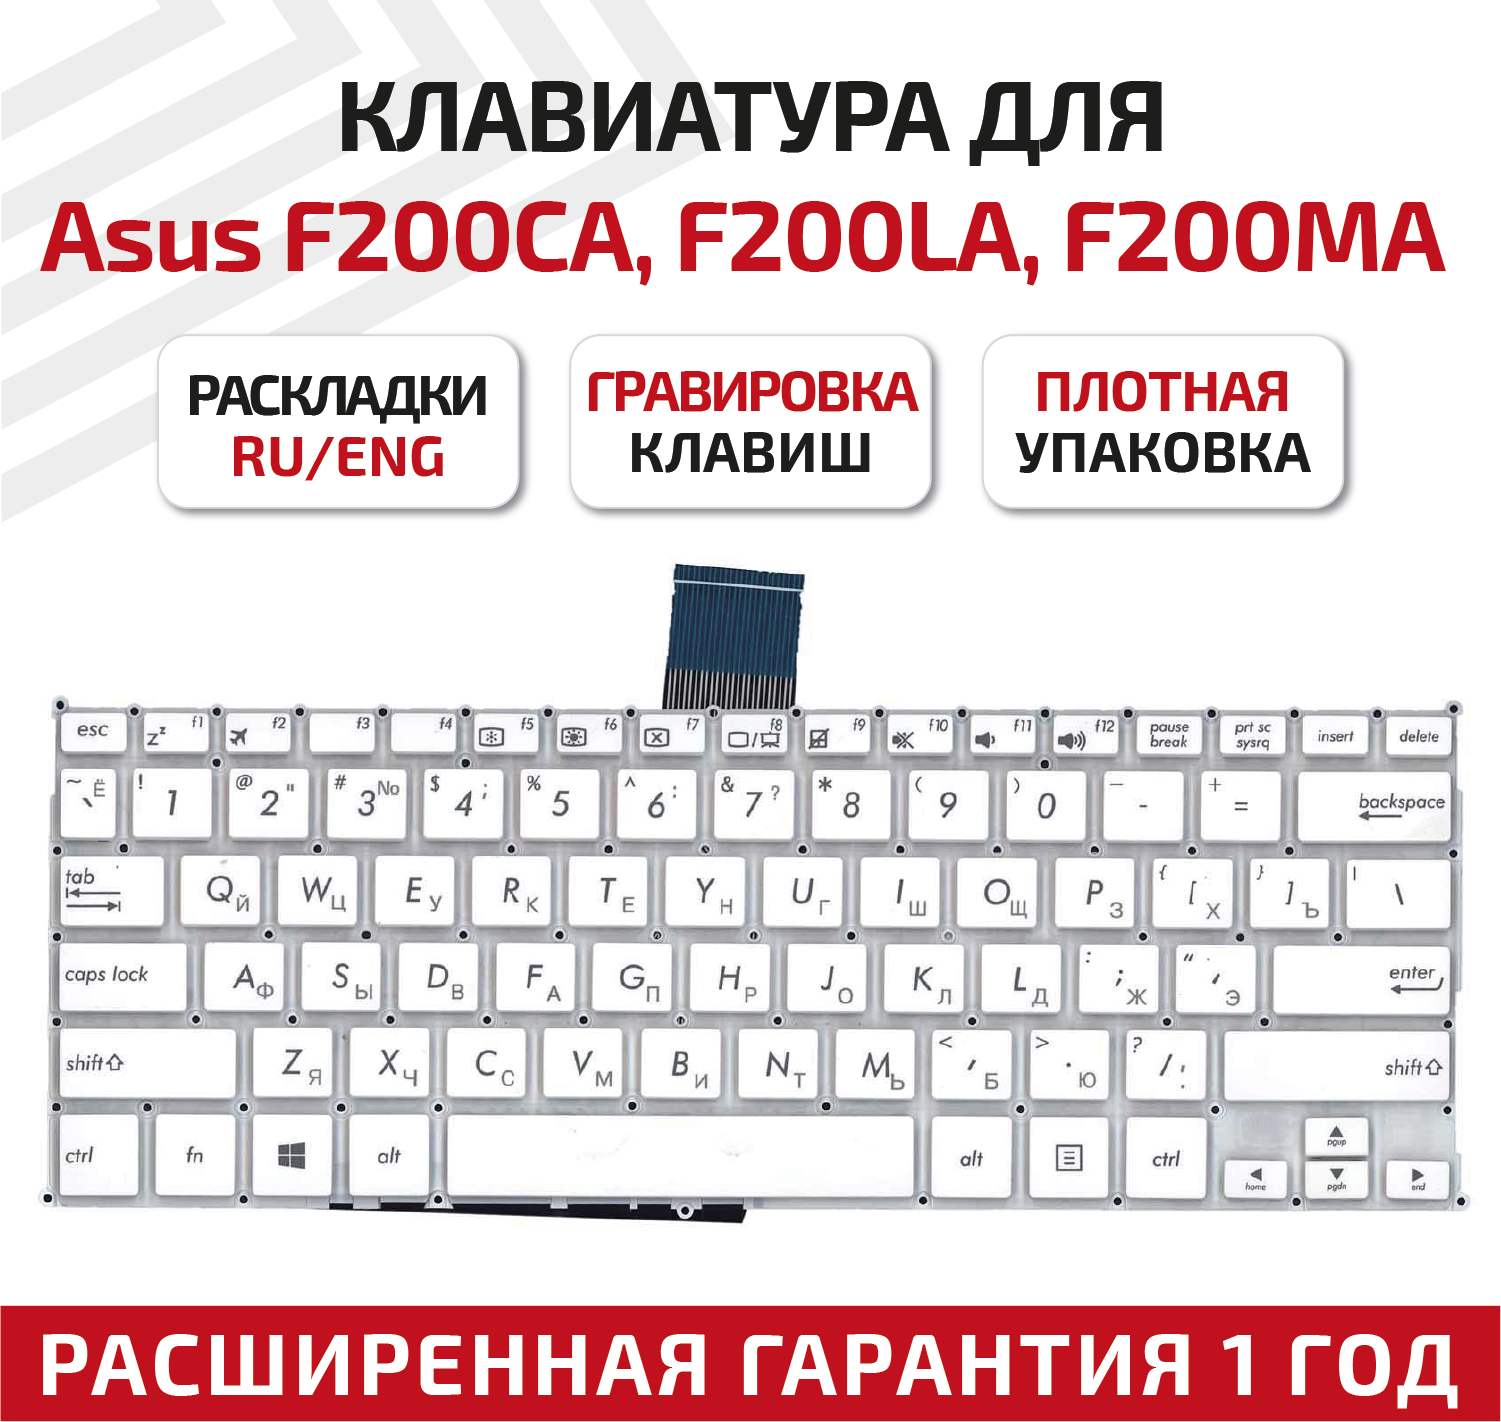 Клавиатура (keyboard) AEEX8E0110 для ноутбука Asus F200CA, F200LA, F200MA, X200CA, X200LA, X200MA, белая, без рамки, плоский Enter